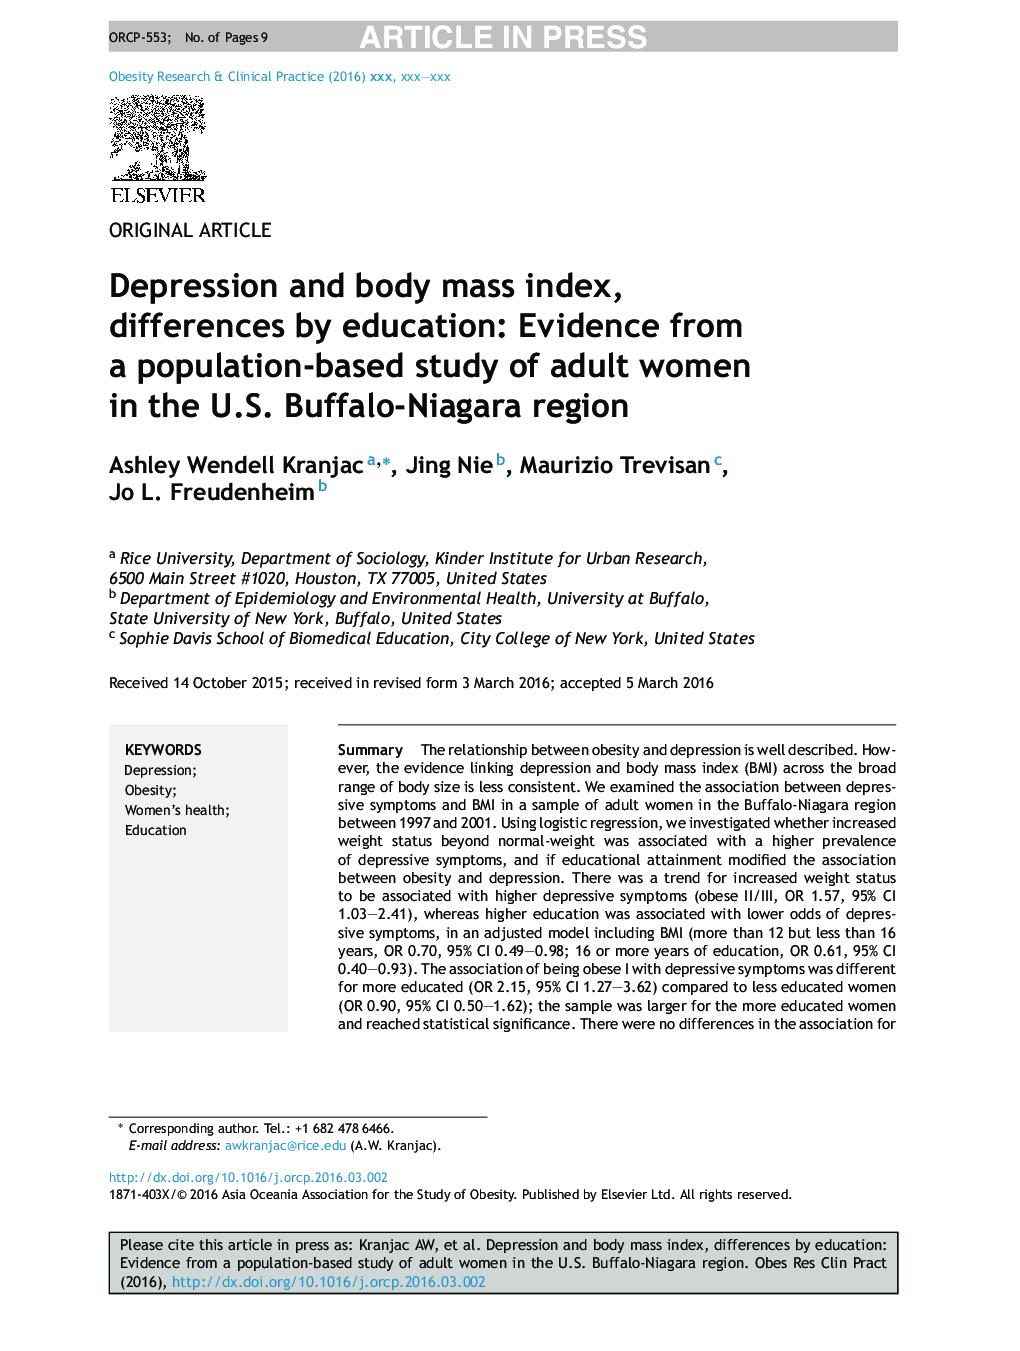 افسردگی و شاخص توده بدنی، تفاوت های تحصیلی: شواهد حاصل از مطالعات جمعیتی زنان بالغ در منطقه بوفالو نیجریه ایالات متحده 